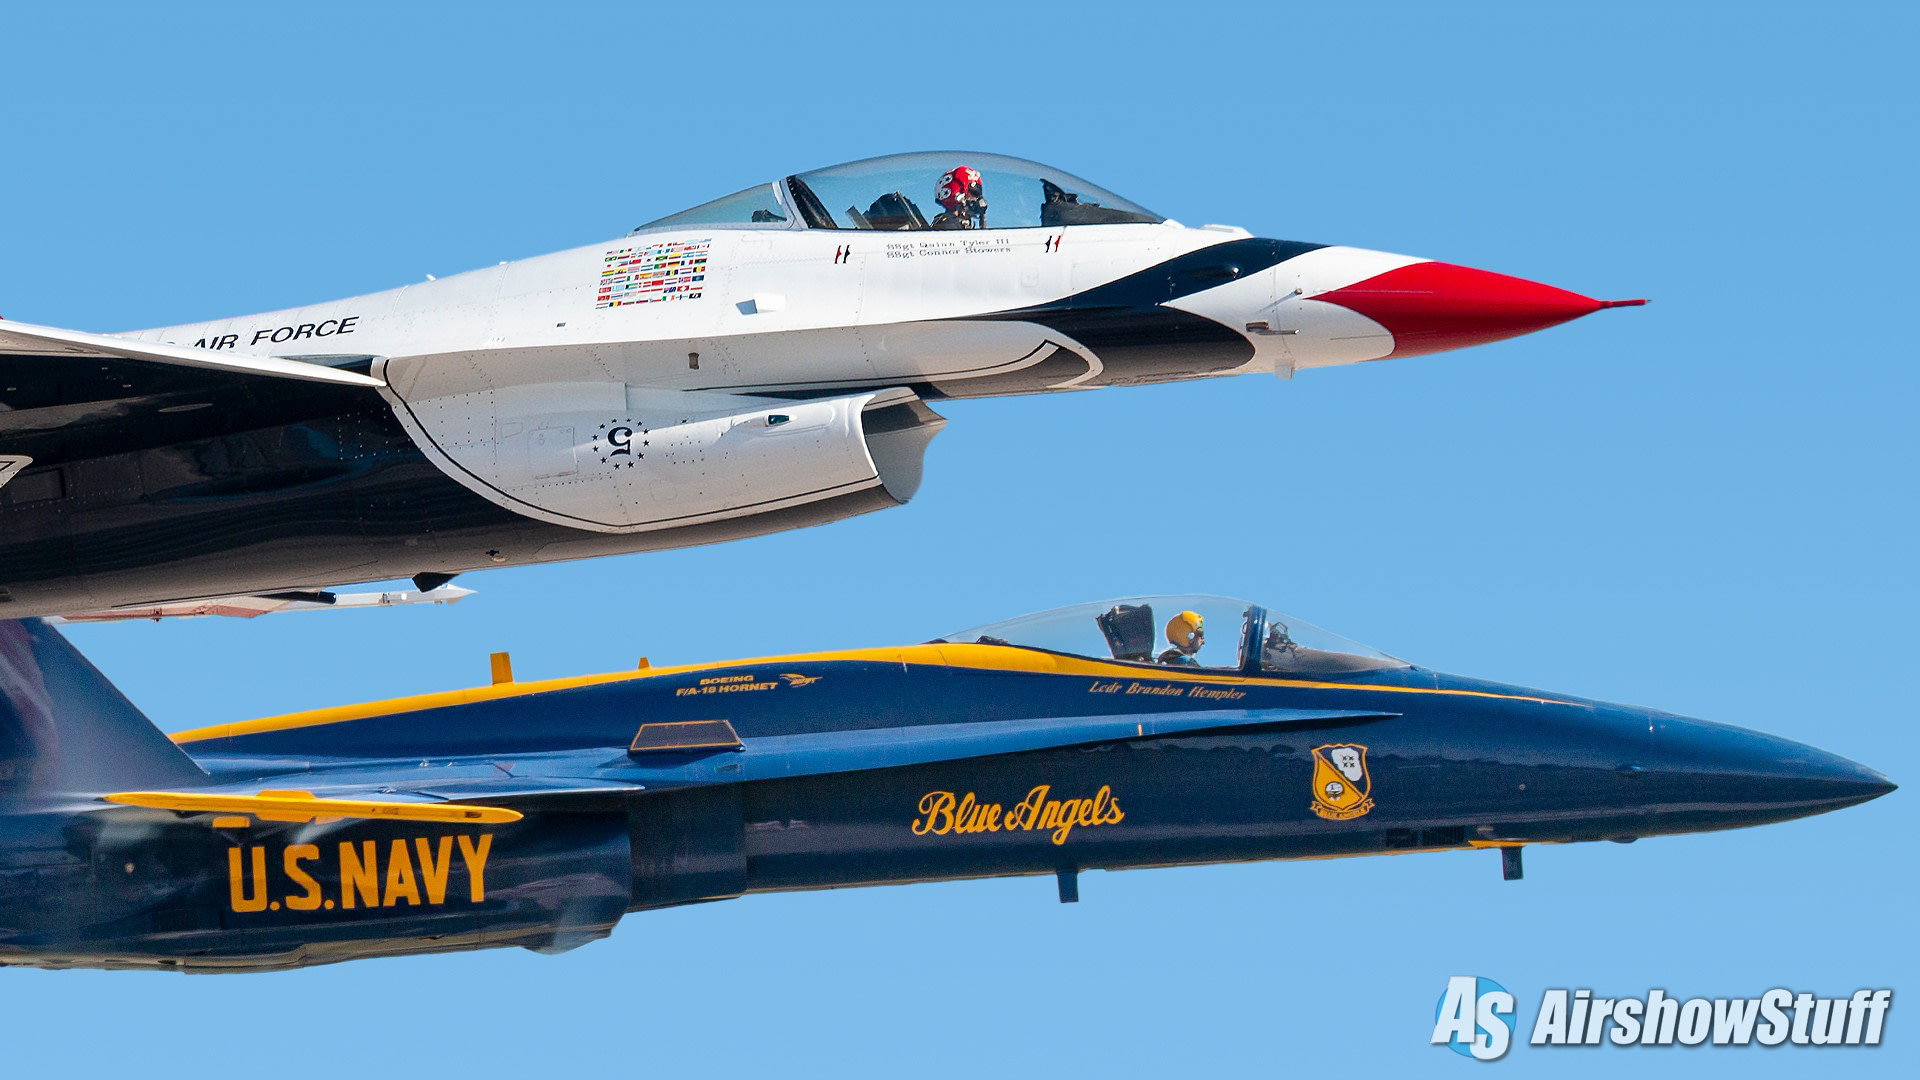 US Air Force Thunderbirds arrive ahead of JBLM airshow this weekend